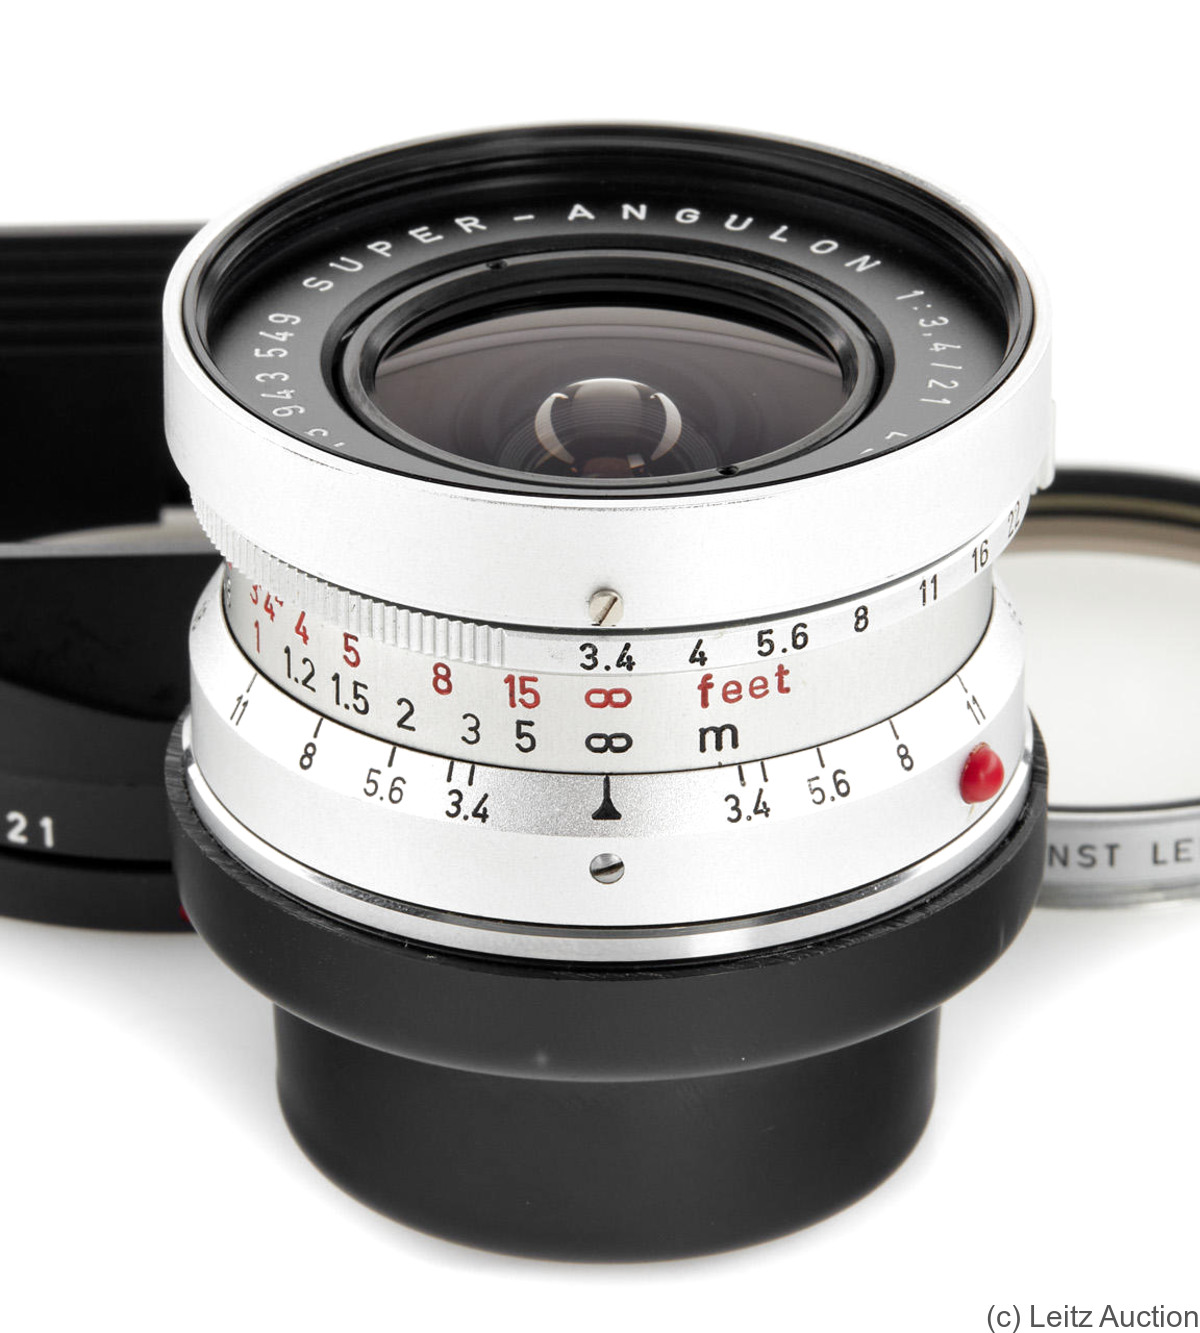 Leitz: 21mm (2.1cm) f3.4 Super-Angulon (BM, chrome) camera